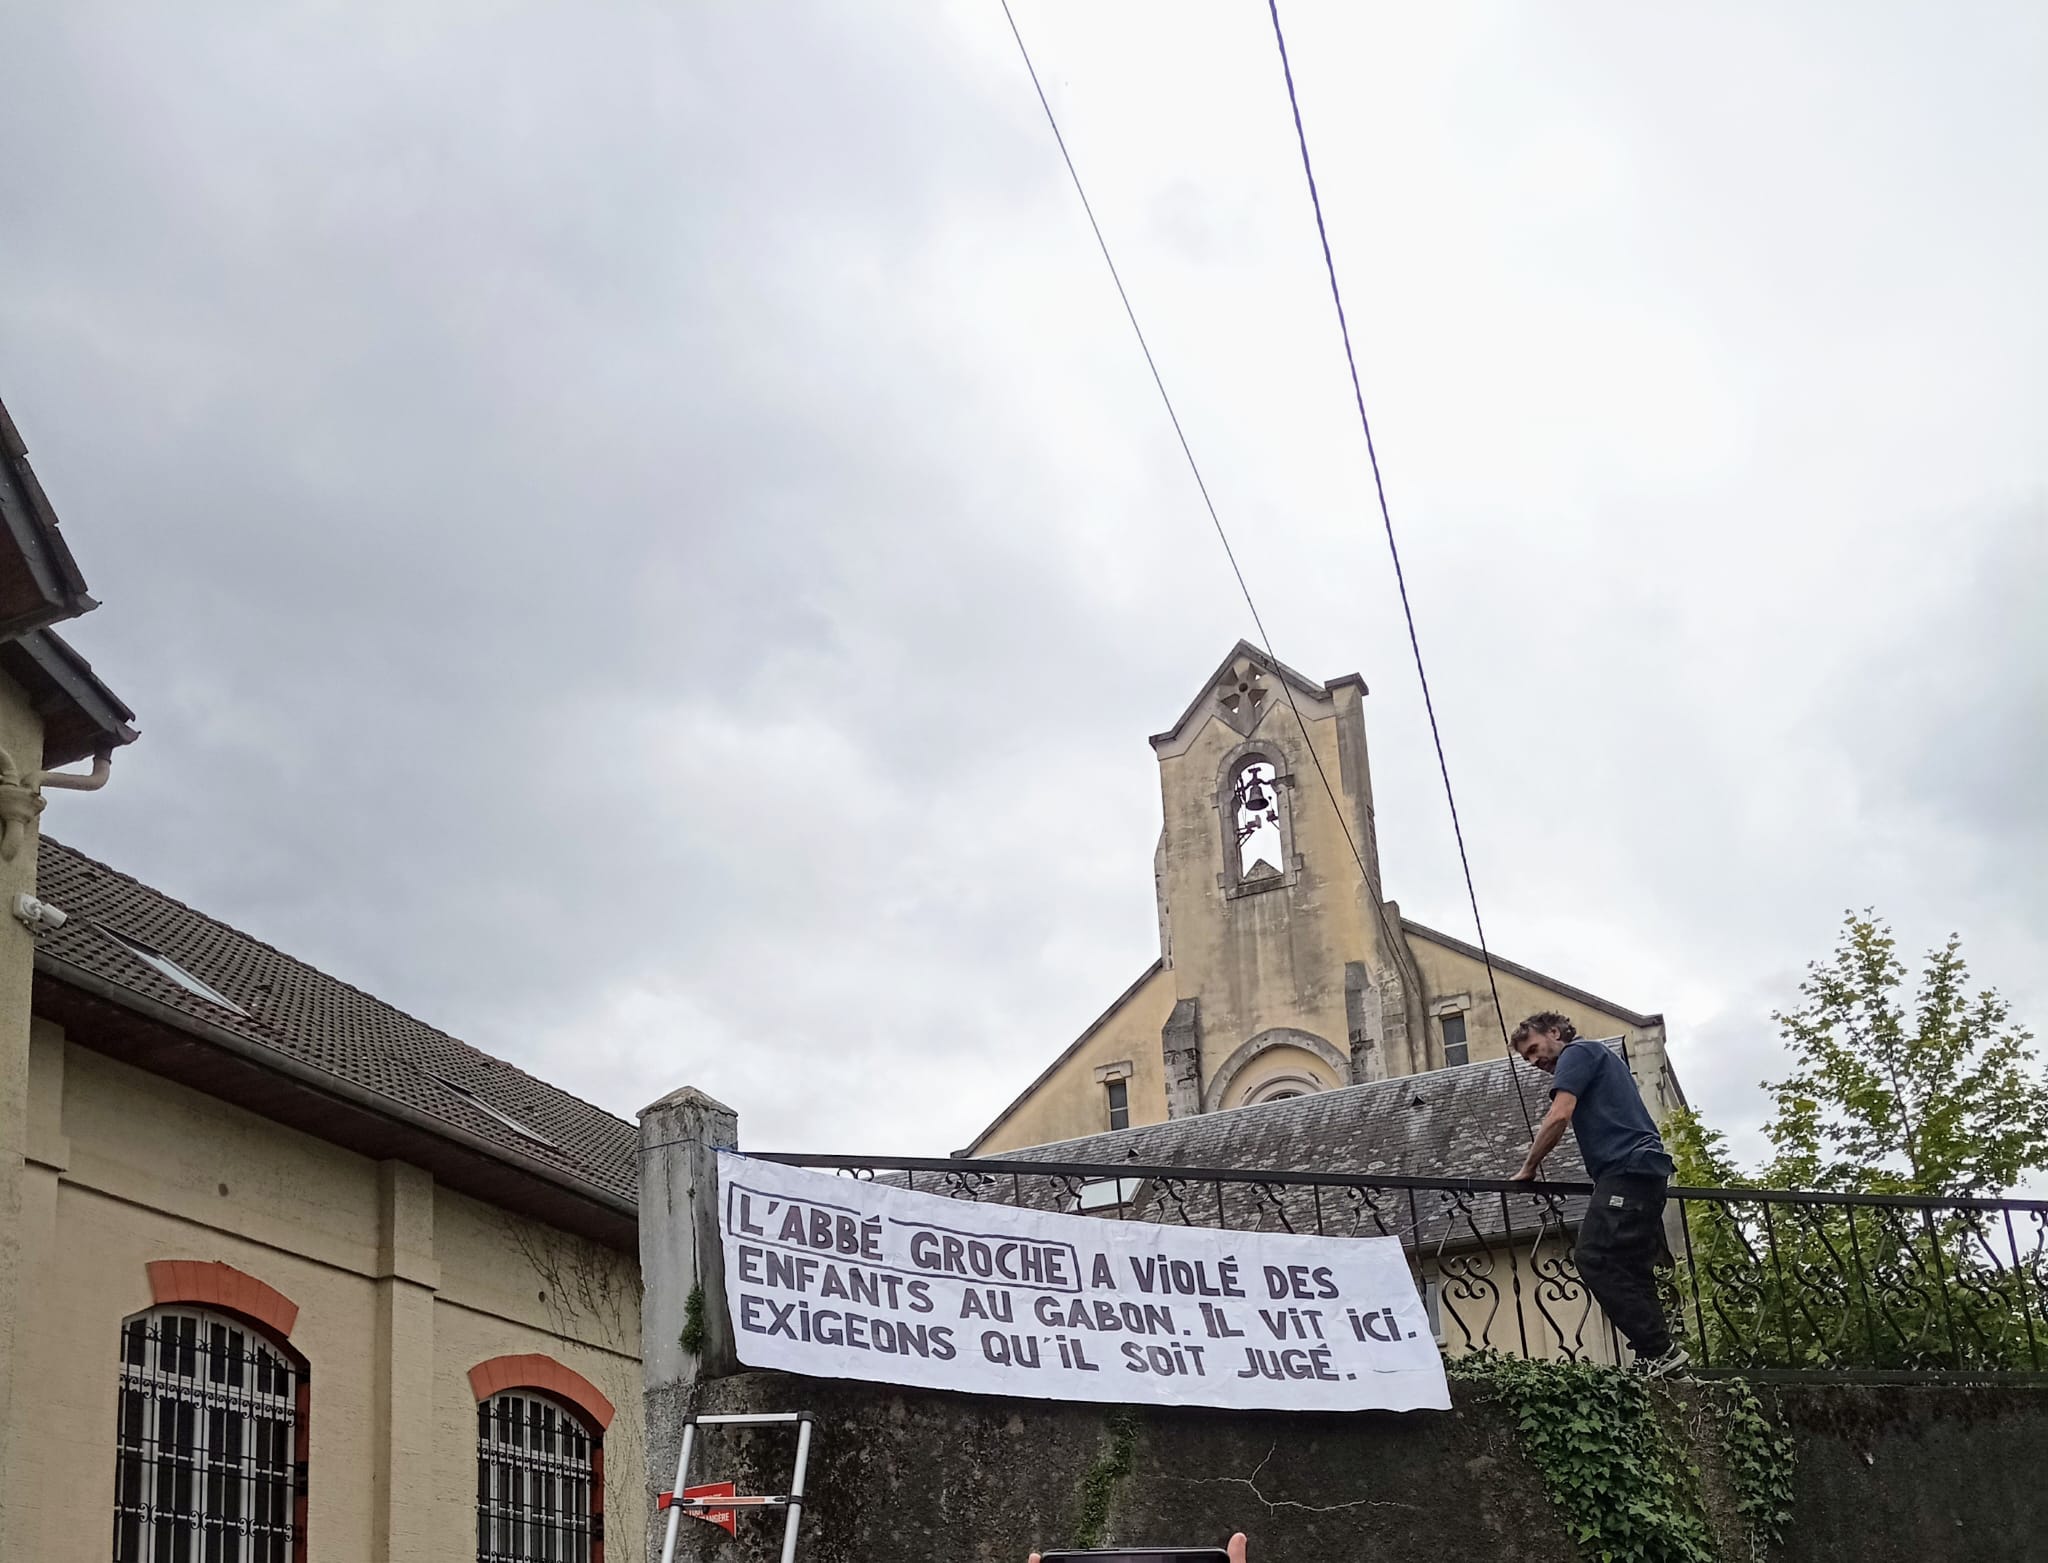 Banderole déployée devant la maison Saint Ignace de la Fraternité Saint Pie X à Lourdes : "L'abbé Griche a violé des enfants au Gabon. Il vit ici. Exigeons qu'il soit jugé."